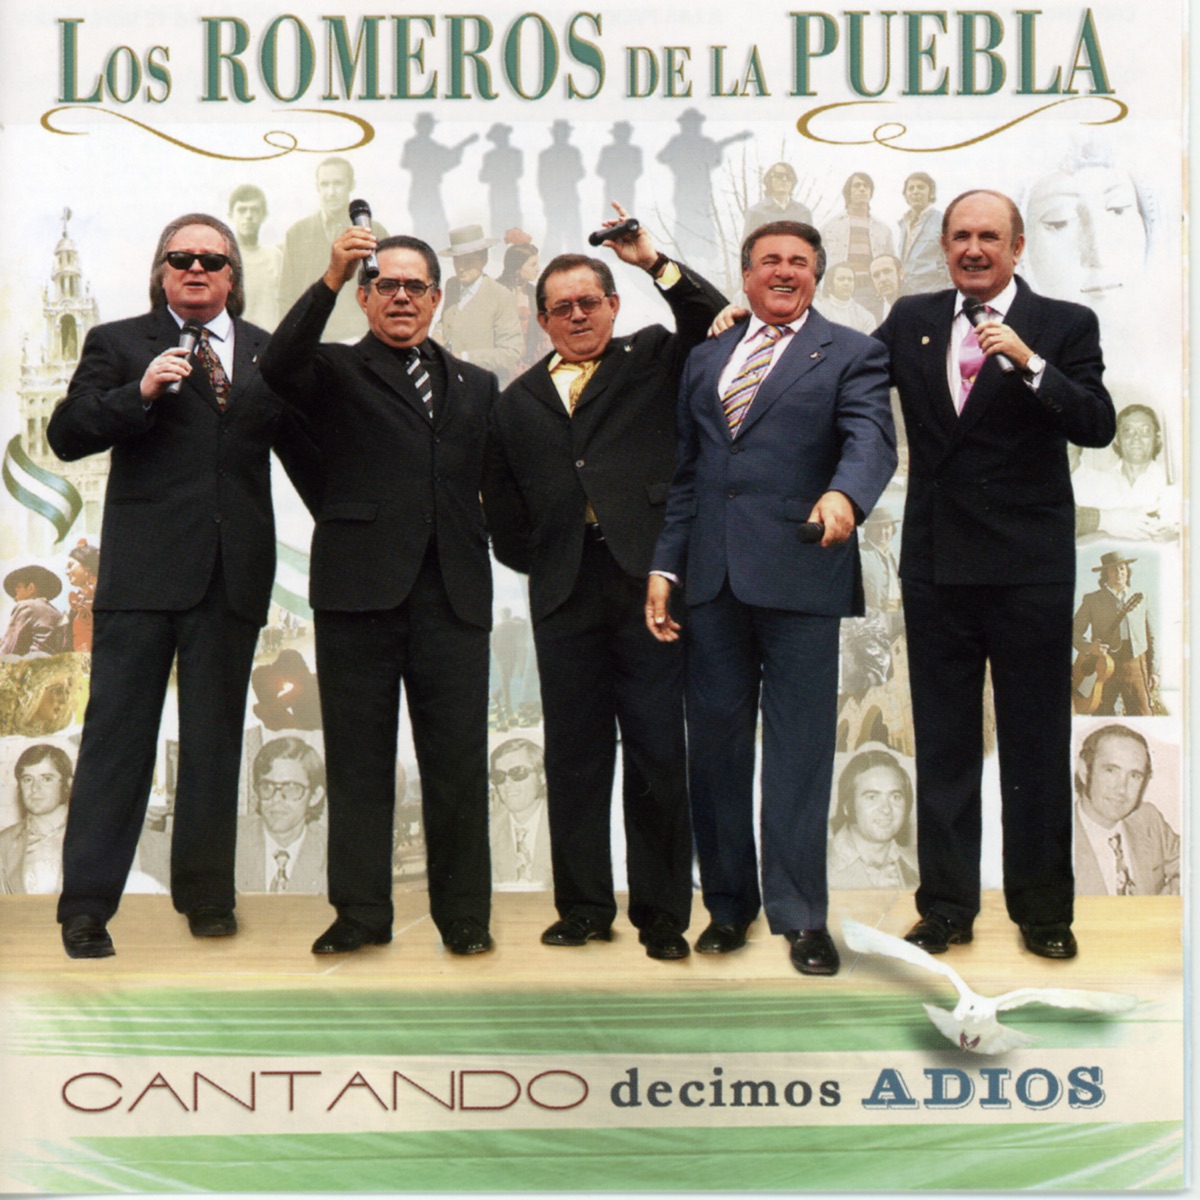 Las 40 Mejores Sevillanas de los Romeros de la Puebla by Los Romeros de la  Puebla on Apple Music